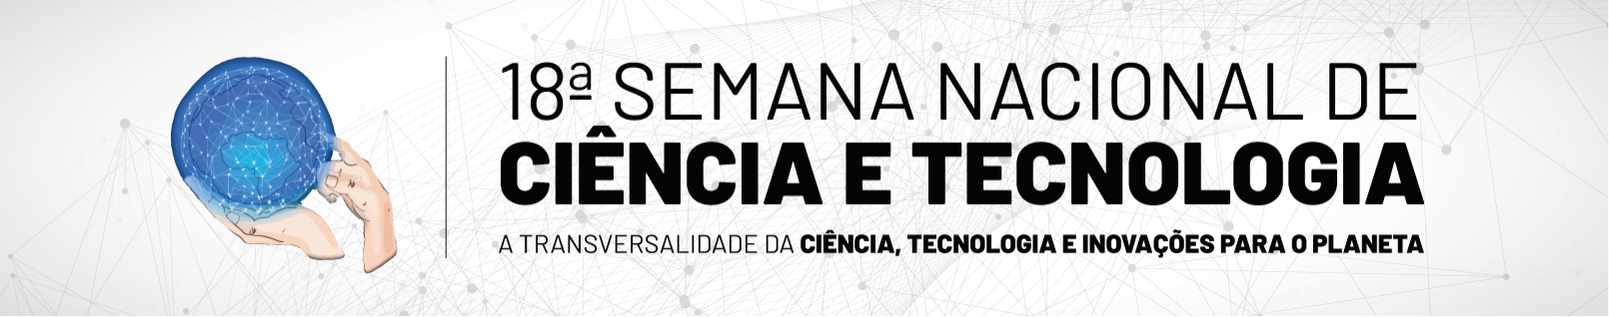 Semana Nacional de Ciência e Tecnologia do IF Goiano